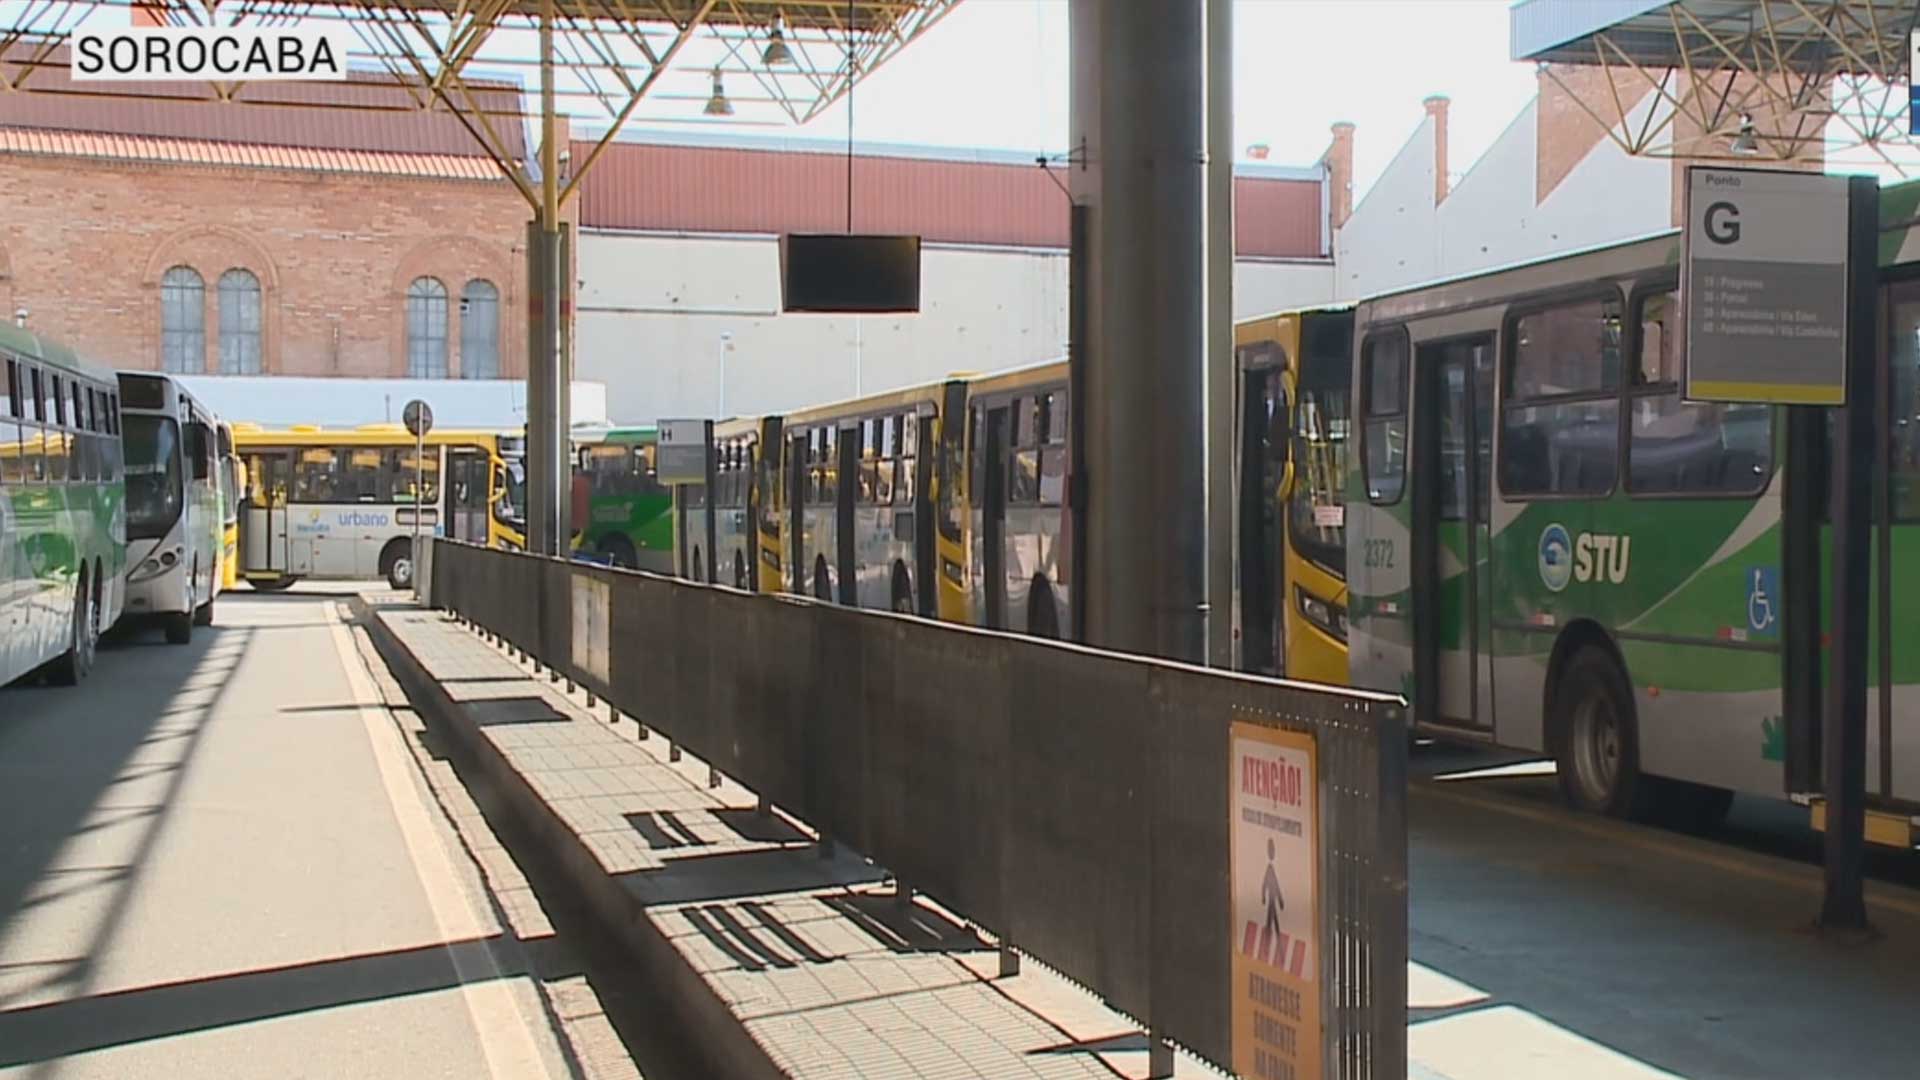 Transporte público fica parado quase quatro horas em Sorocaba.